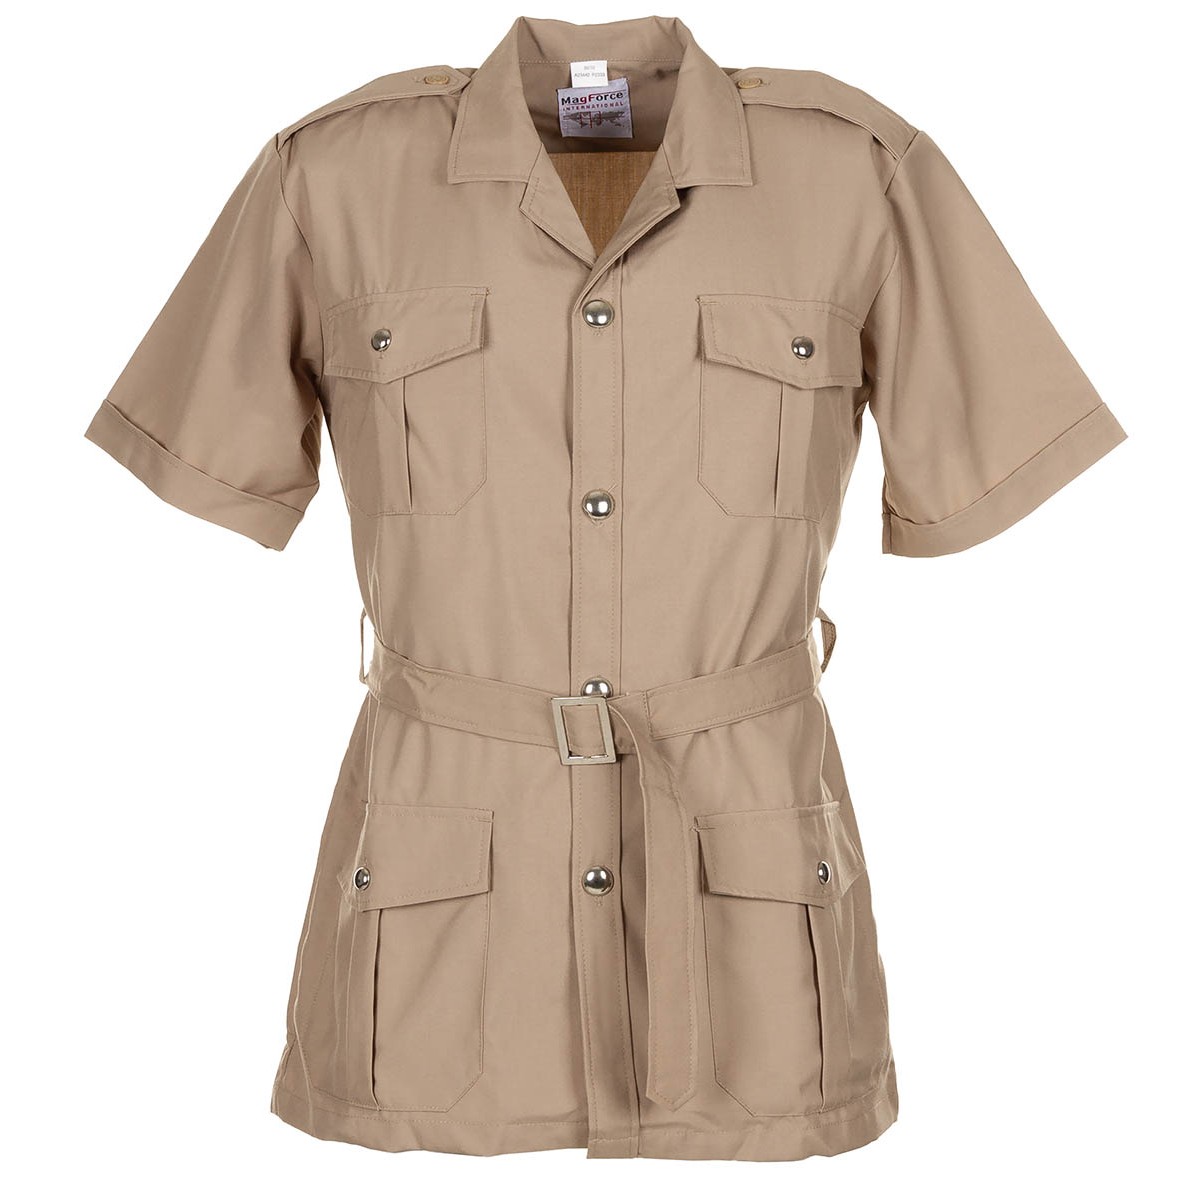 Tropická blůza francouzská košile Safari khaki MagForce® Velikost: 88/92 dlouhý rukáv